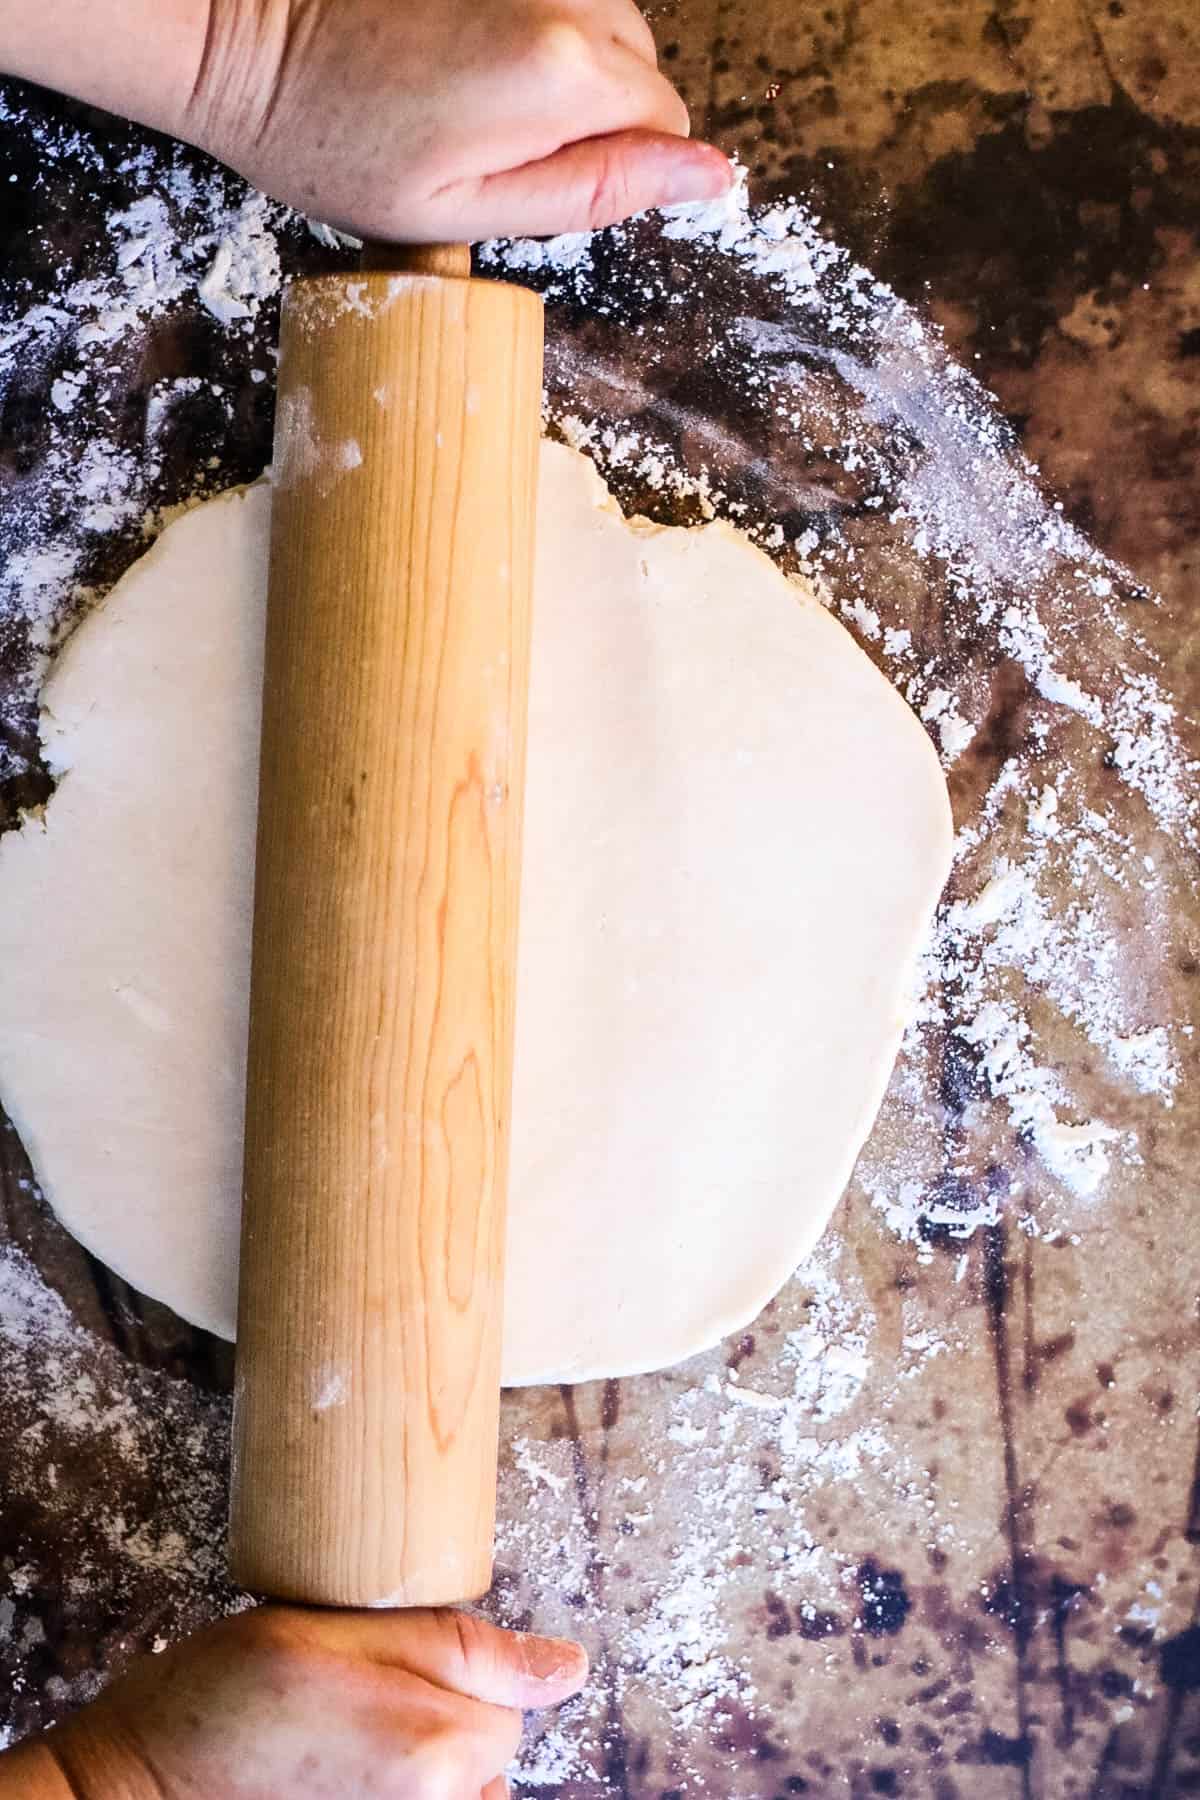 A person preparing rugelach dough on a floured surface.